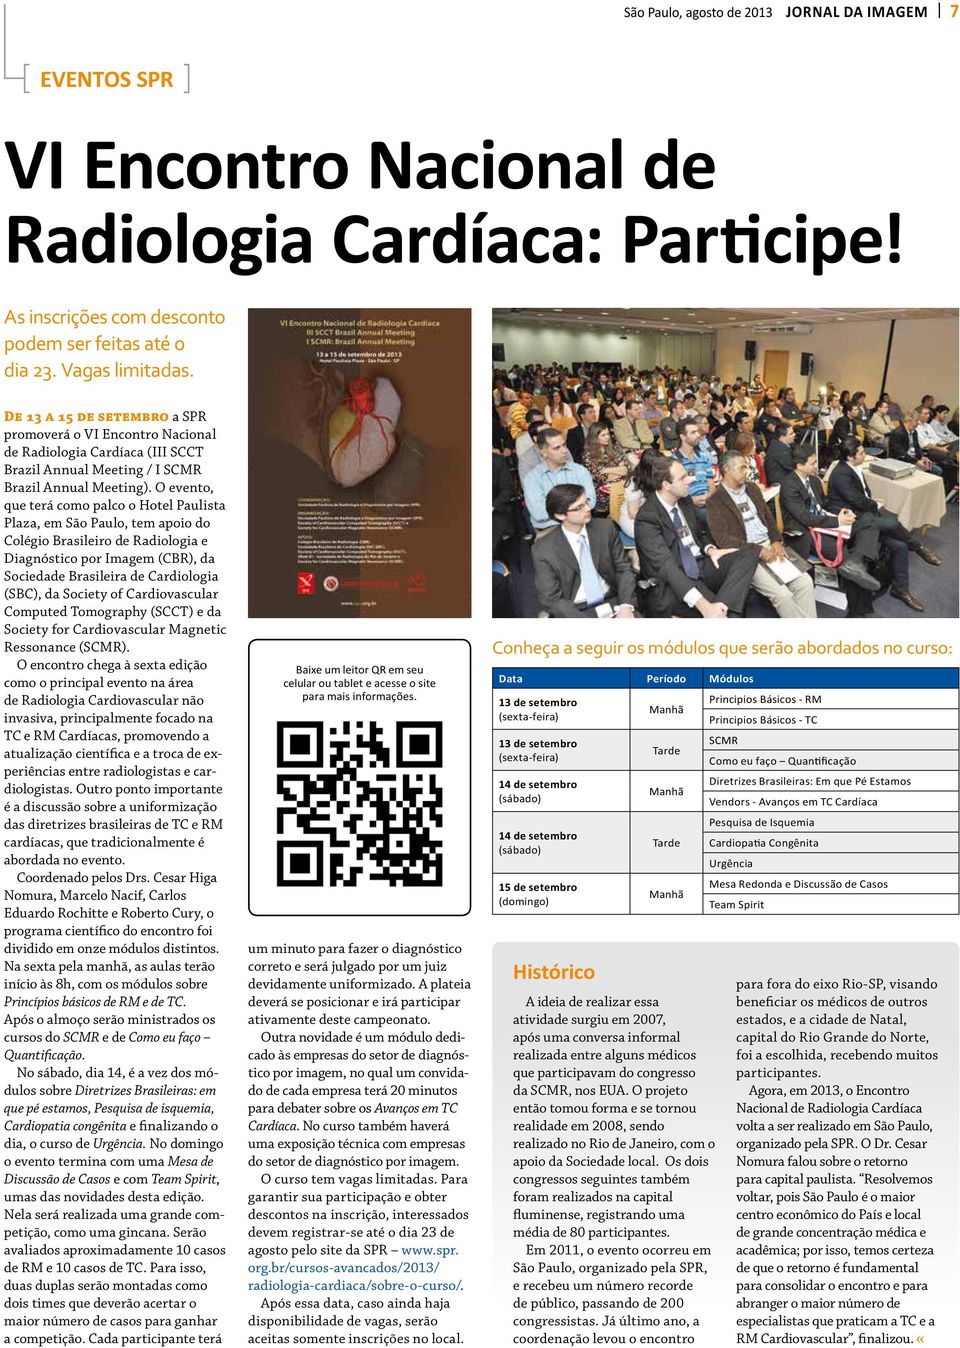 O evento, que terá como palco o Hotel Paulista Plaza, em São Paulo, tem apoio do Colégio Brasileiro de Radiologia e Diagnóstico por Imagem (CBR), da Sociedade Brasileira de Cardiologia (SBC), da